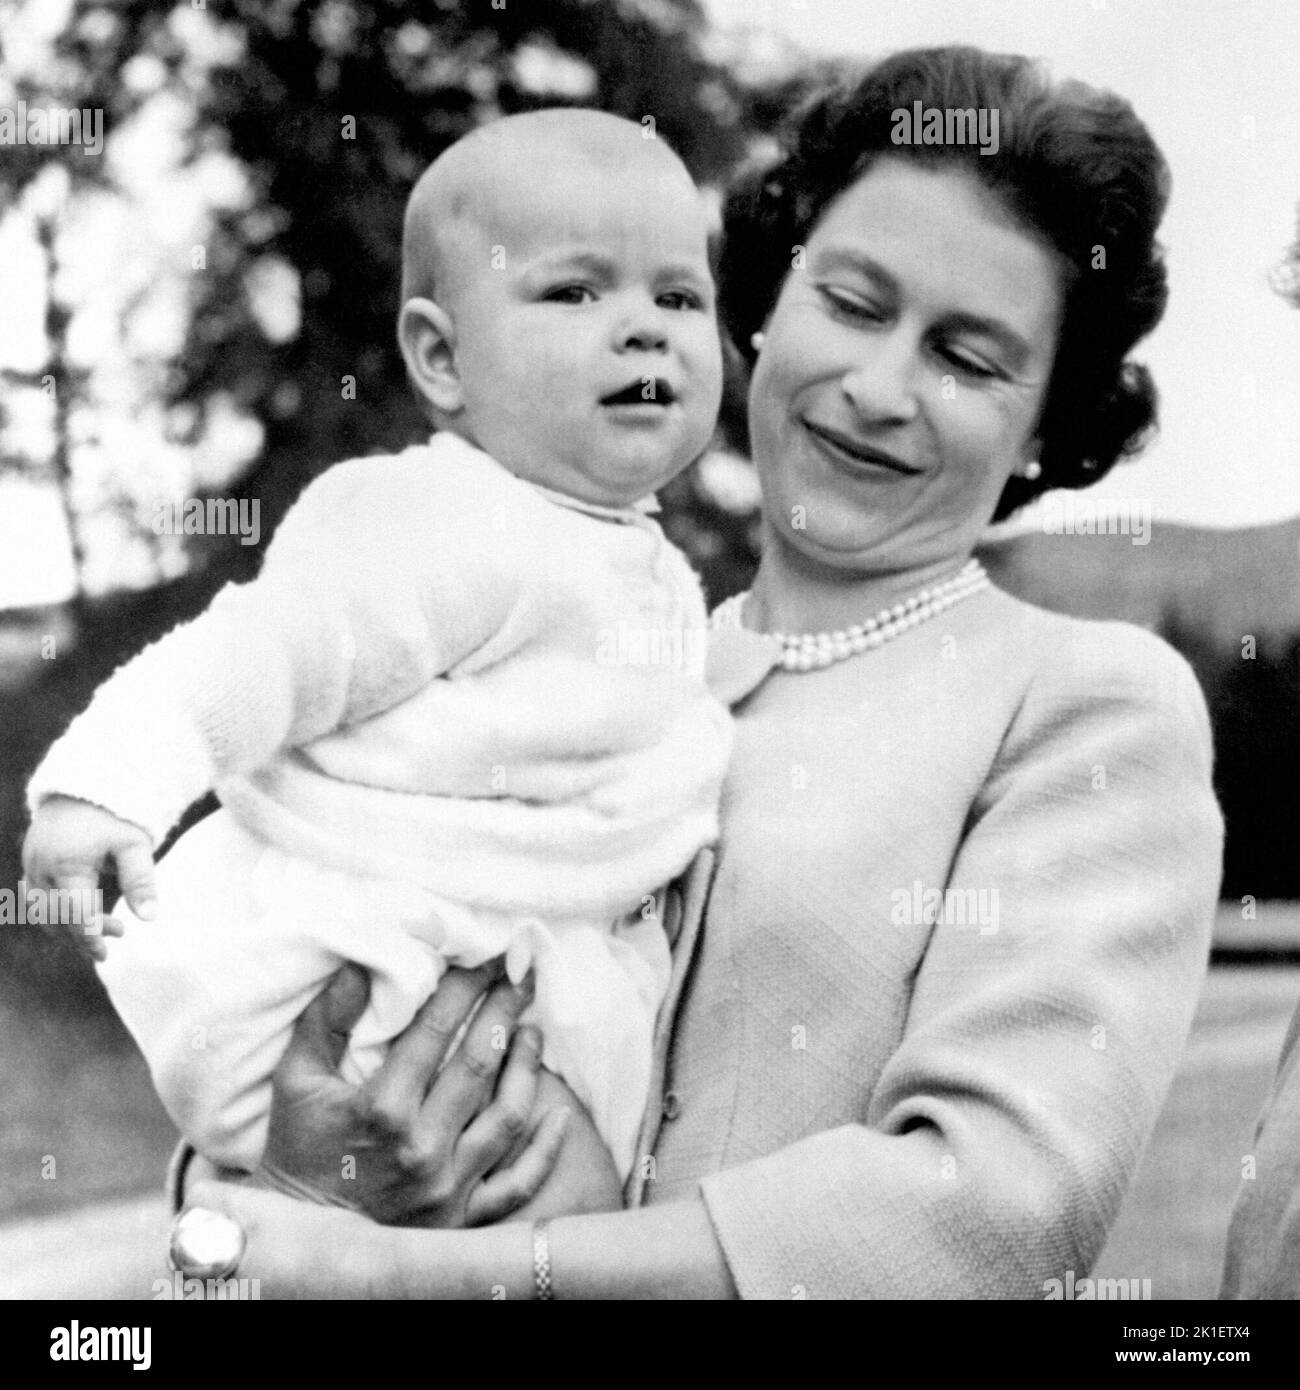 Foto de archivo de fecha 08/11/60 de la Reina Isabel II que sostiene al Príncipe Andrés durante una excursión en los terrenos de Balmoral, Escocia. Fue el primer niño en nacer de un monarca reinante durante 103 años. Fecha de emisión: Domingo 18 de Septiembre de 2022.. El crédito de la foto debe decir: PA Wire Foto de stock